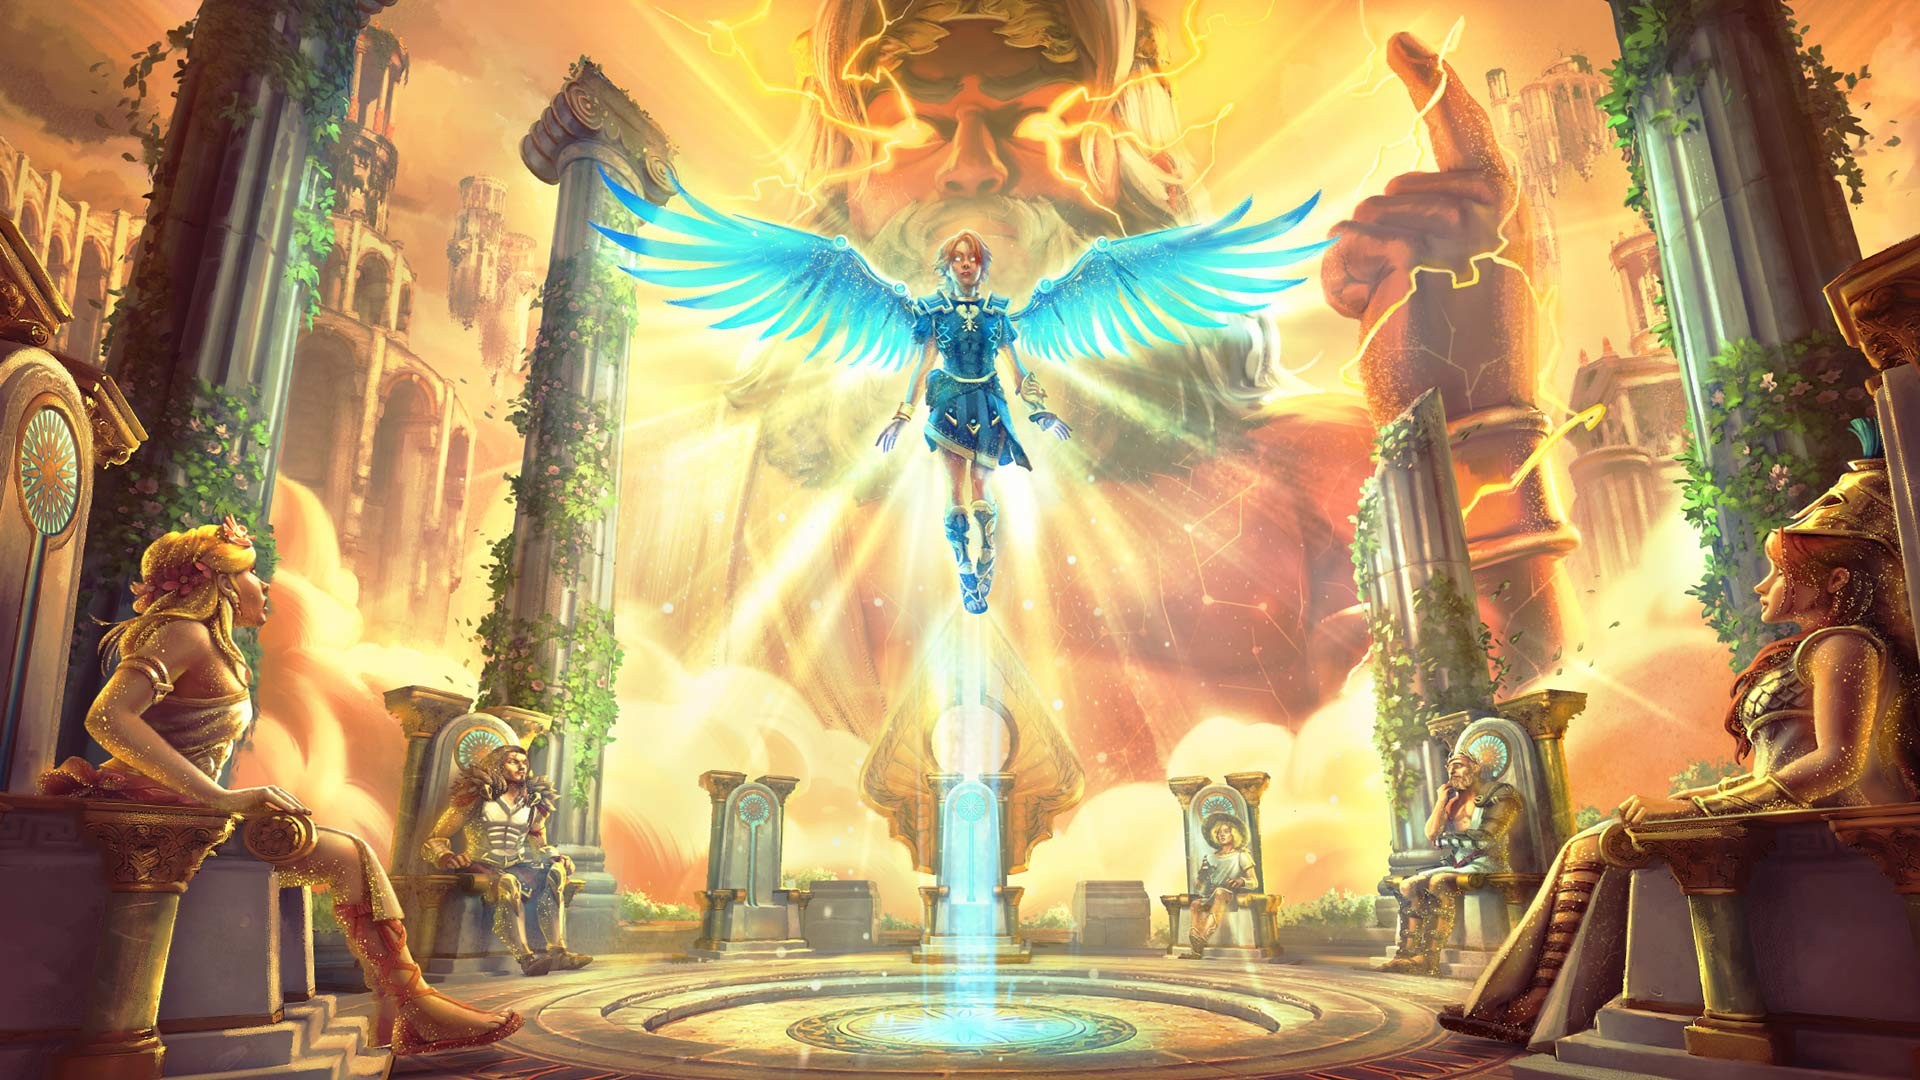 Immortals Fenyx Rising™ DLC 1 A New God